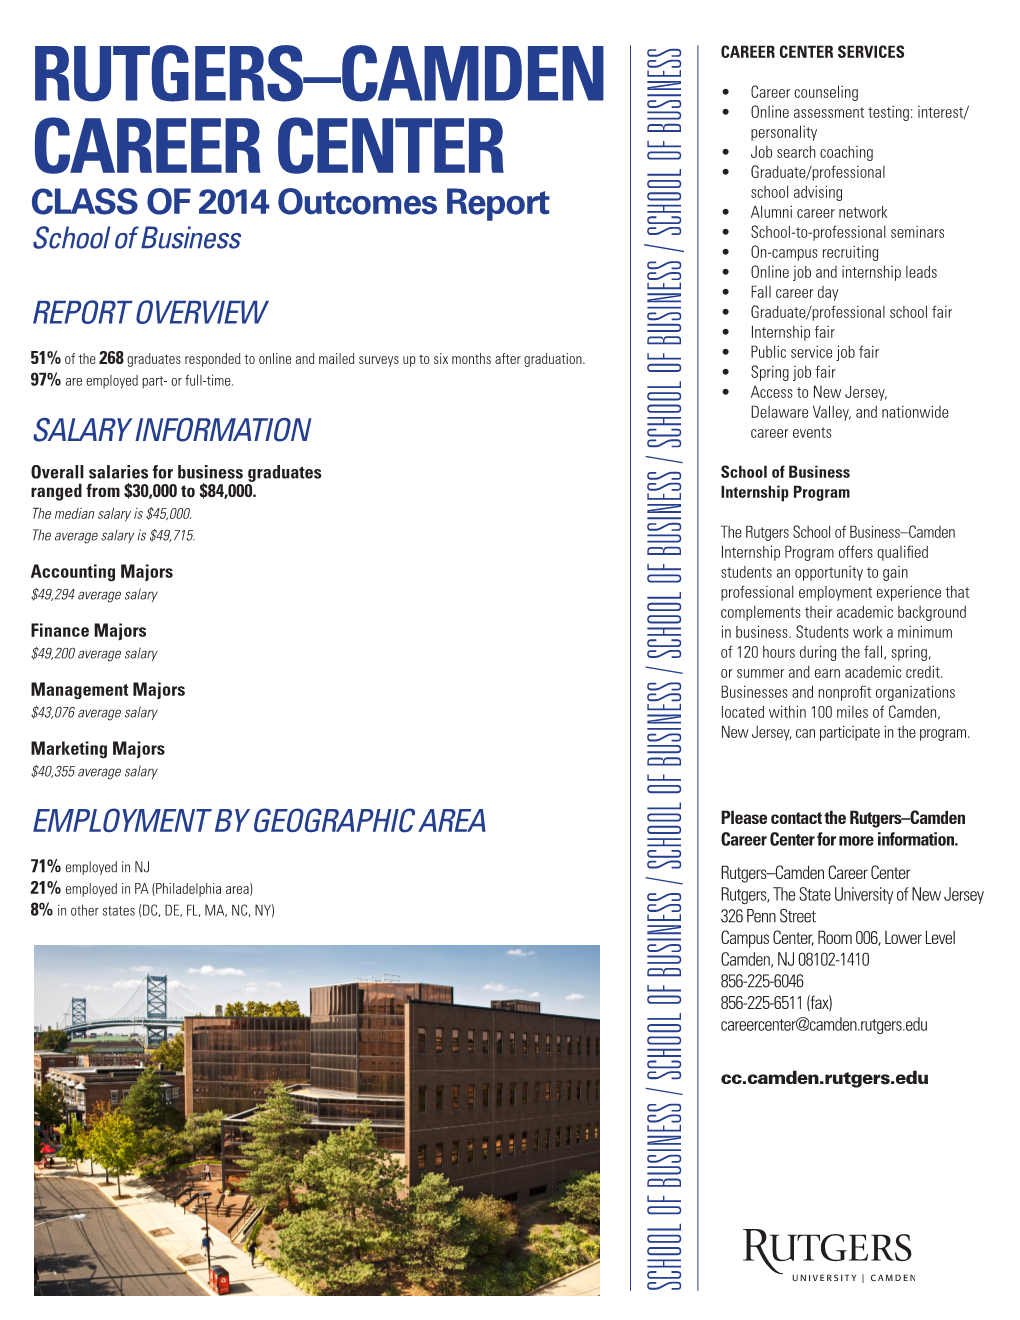 Rutgers-Camden Career Center